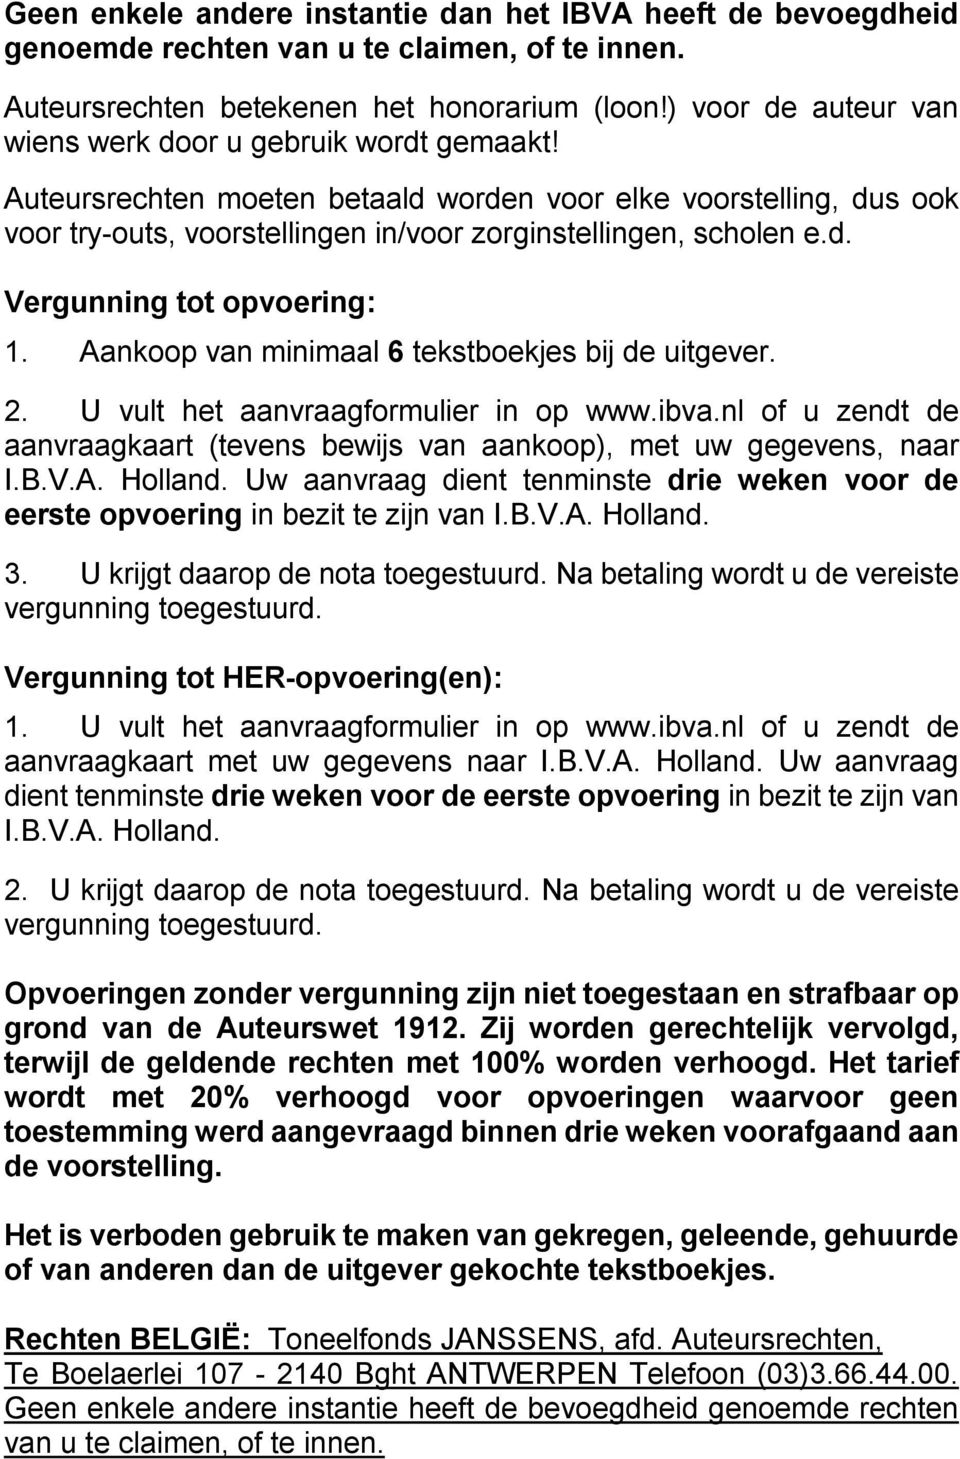 Aankoop van minimaal 6 tekstboekjes bij de uitgever. 2. U vult het aanvraagformulier in op www.ibva.nl of u zendt de aanvraagkaart (tevens bewijs van aankoop), met uw gegevens, naar I.B.V.A. Holland.